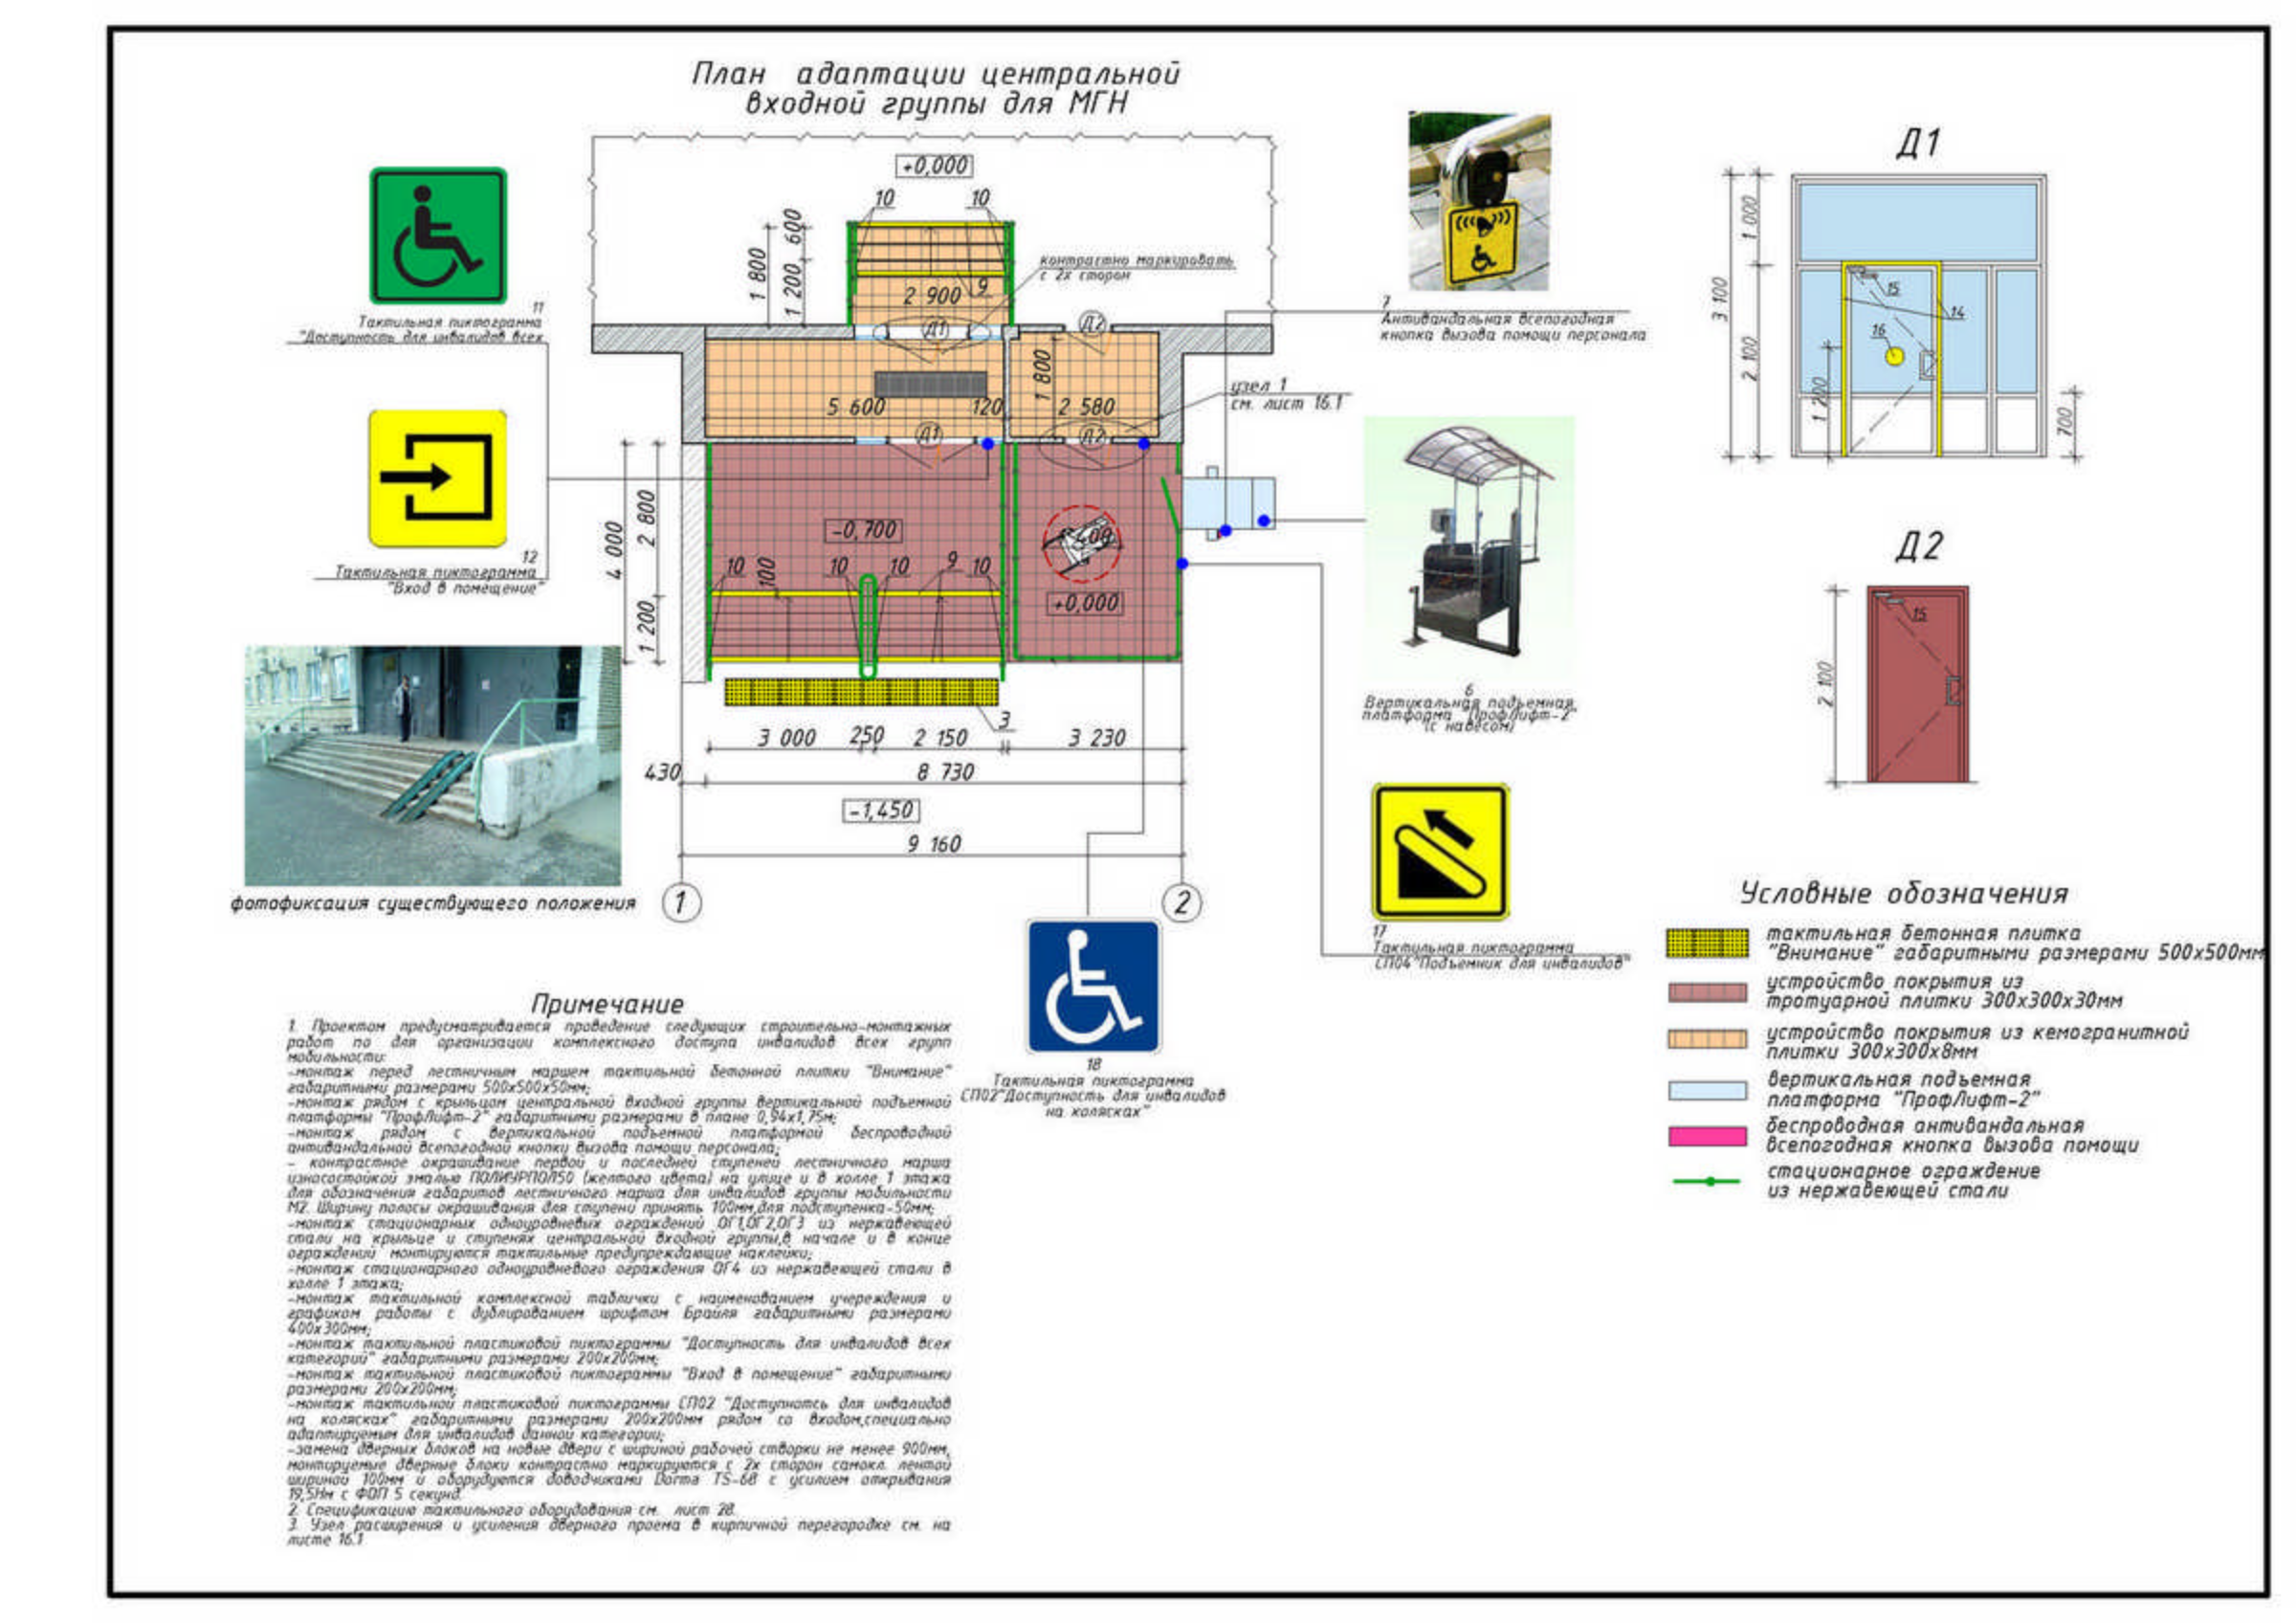 Пожаробезопасные зоны для МГН. Схема движения маломобильных групп населения по территории. Зона безопасности МГН В лифтовом холле. Площадь зоны безопасности для МГН м4.